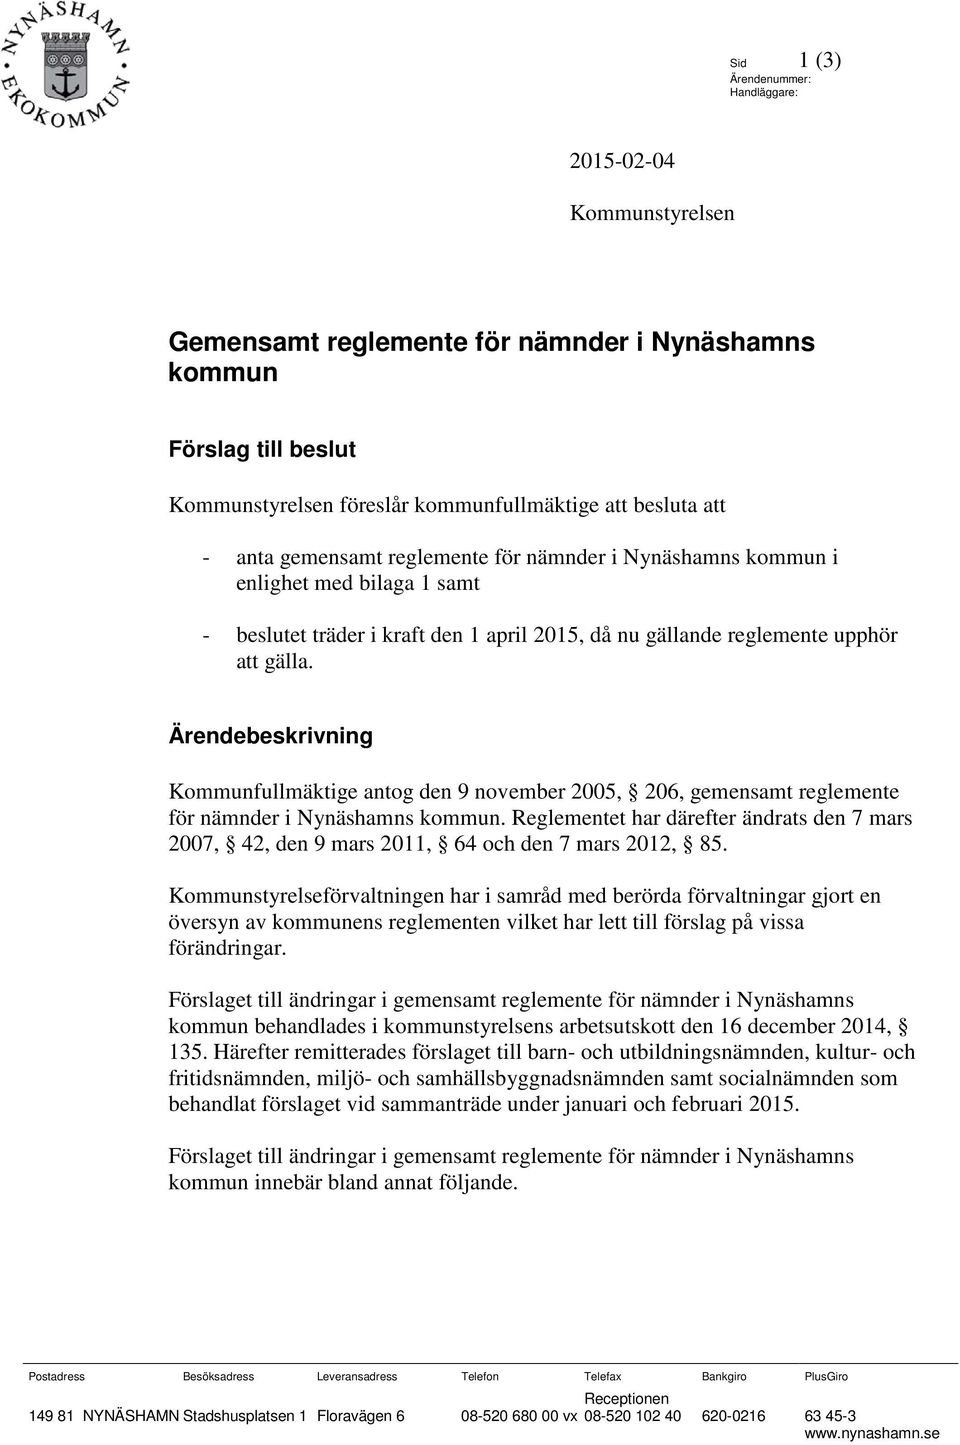 Ärendebeskrivning Kommunfullmäktige antog den 9 november 2005, 206, gemensamt reglemente för nämnder i Nynäshamns kommun.